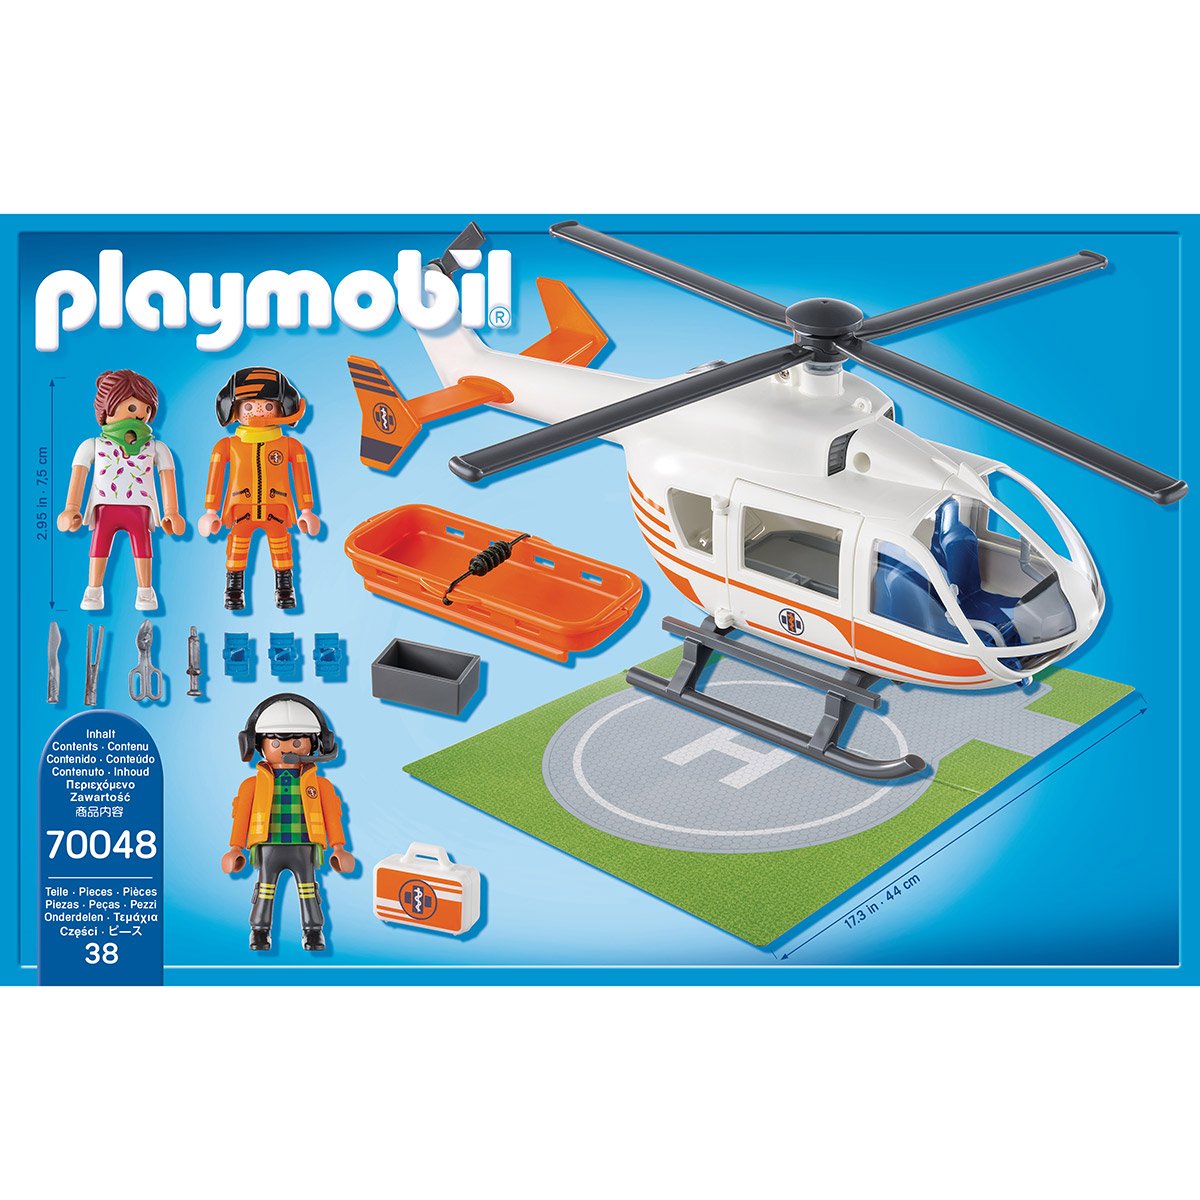 Playmobil 70048 12.5 x 24.8 x 38.5 cm Coloré Hélicoptère de Secours 